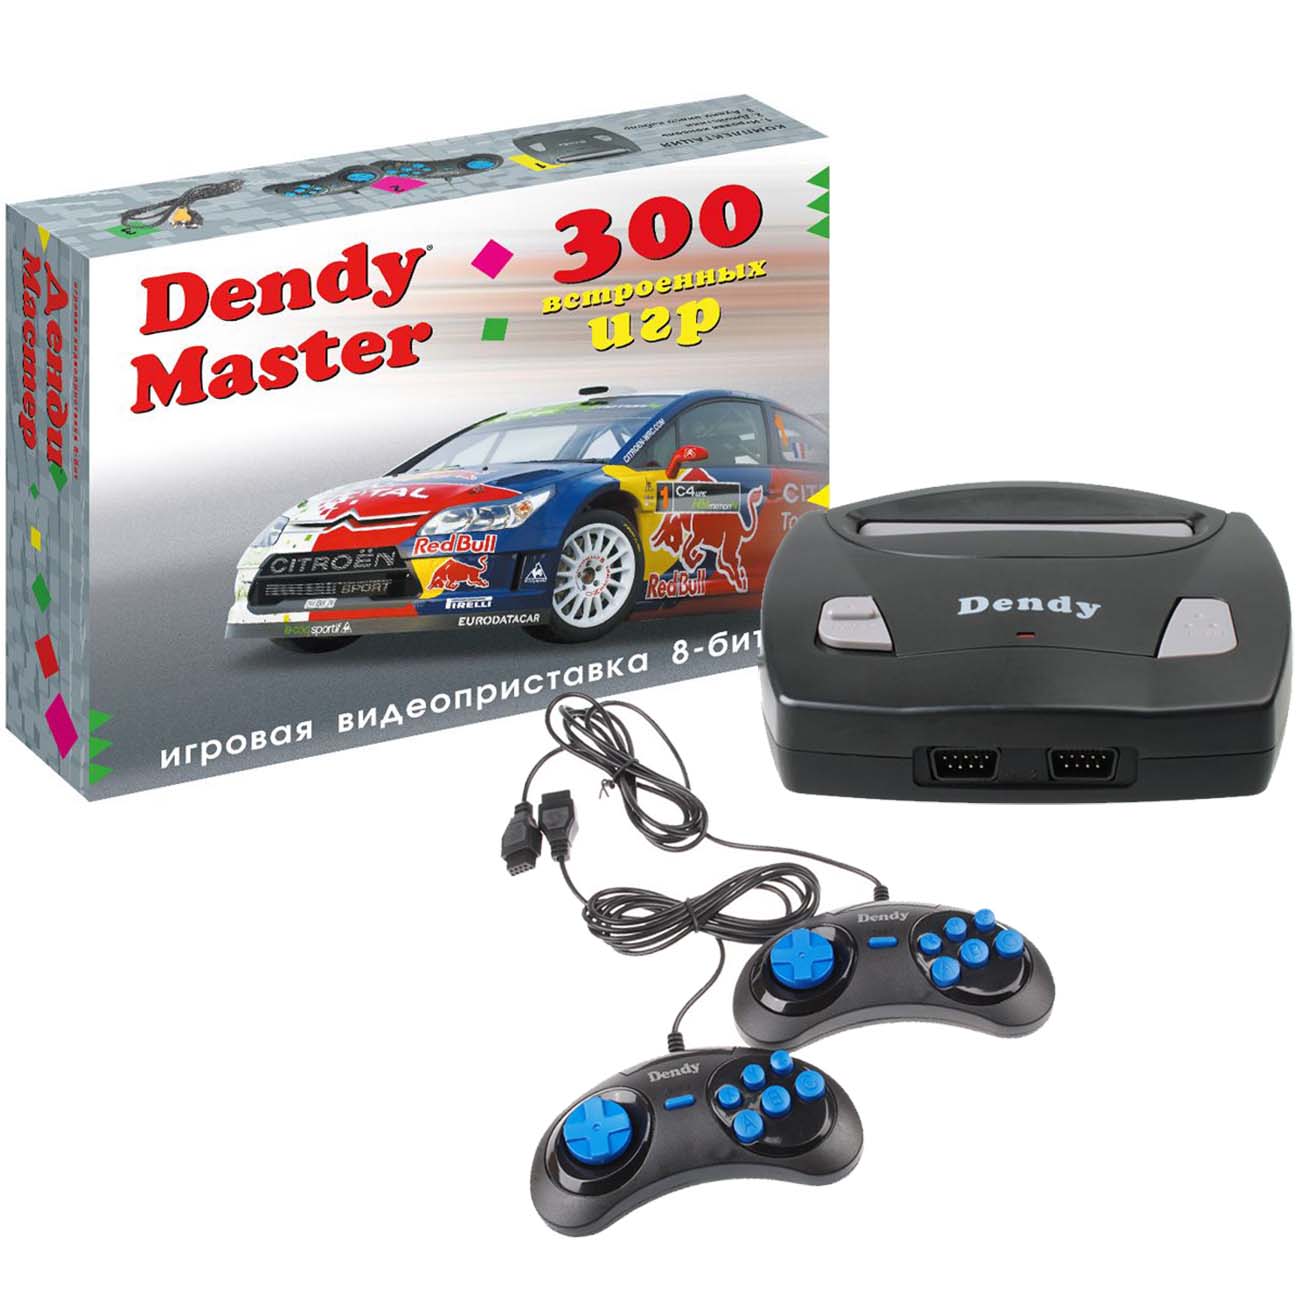 Денди приставка встроенные игры. Игровая приставка Dendy 300 игр. Игровая консоль Dendy Master 300 игр. Приставка Денди 300 игр 8 бит. Игровая приставка NEWGAME Dendy Master 300 (DM-300) 2 геймпада, 300 игр..